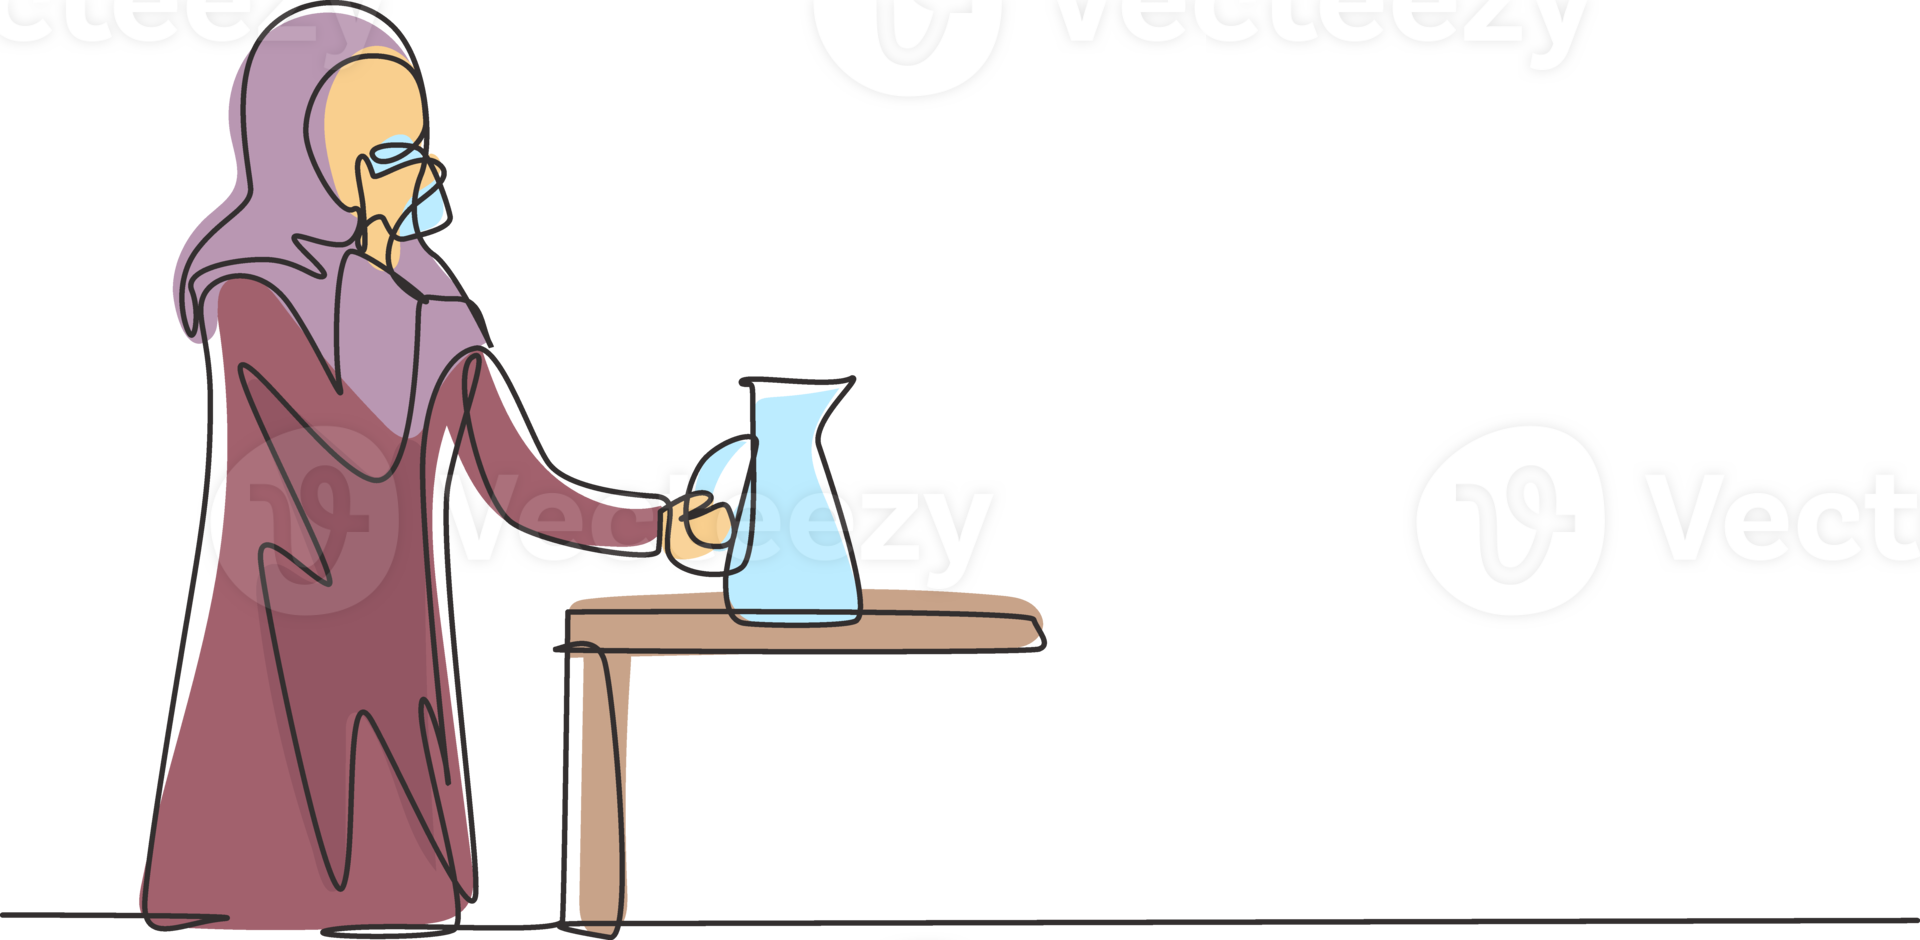 Single kontinuierlich Linie Zeichnung jung arabisch Frau Stehen und Trinken Wasser im Glas von Krug. nehmen ein brechen während Reinigung Haus. glücklich Person. dynamisch einer Linie zeichnen Grafik Design Illustration png